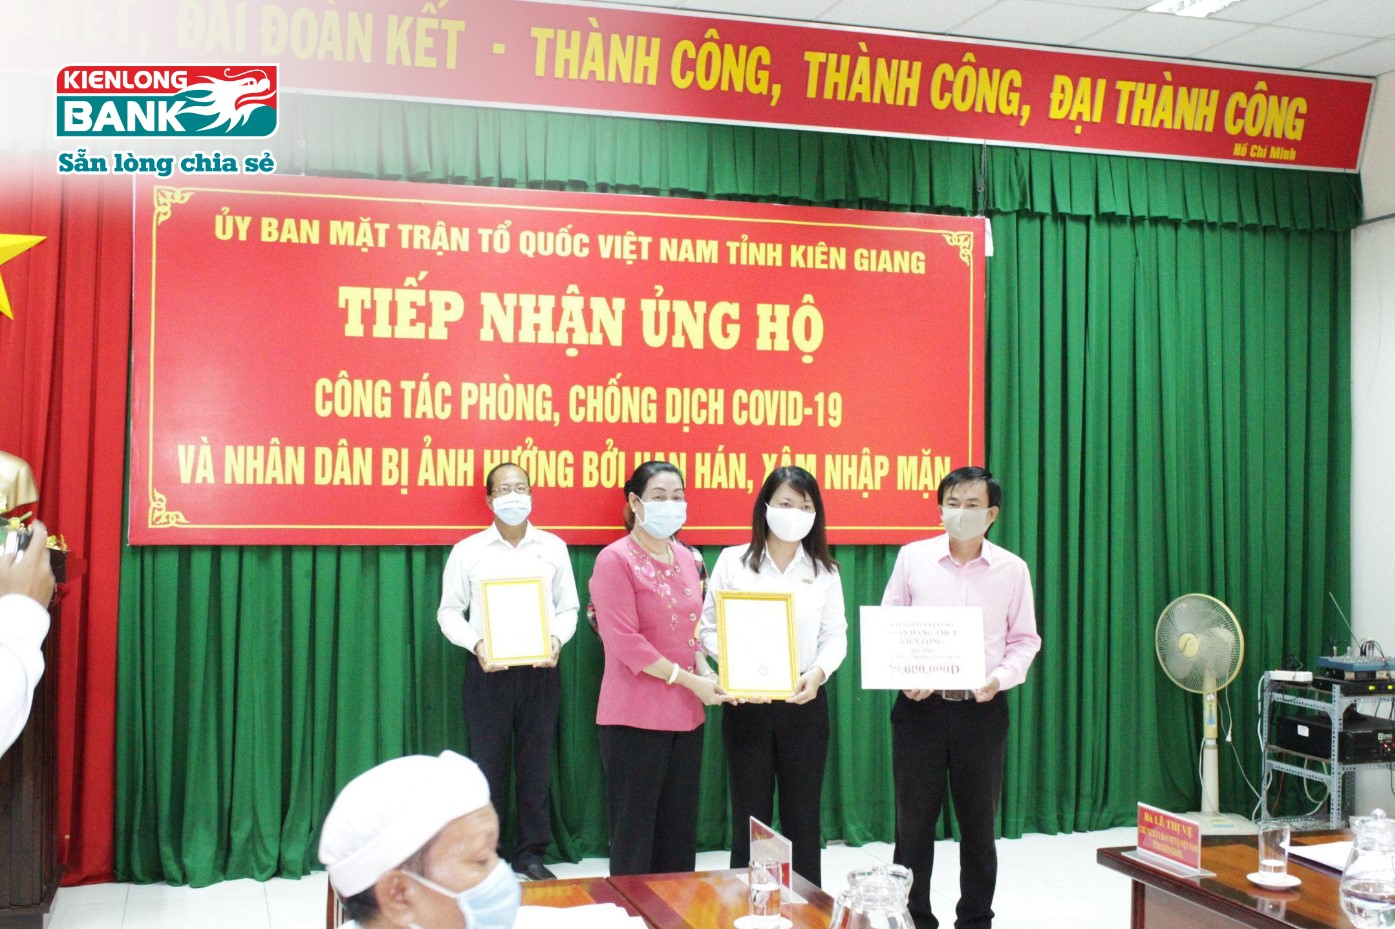 Công đoàn cơ sở Kienlongbank trao tặng 20 triệu đồng ủng hộ công tác phòng chống dịch Covid-19 và người dân bị ảnh hưởng bởi hạn hán, xâm nhập mặn tại tỉnh Kiên Giang